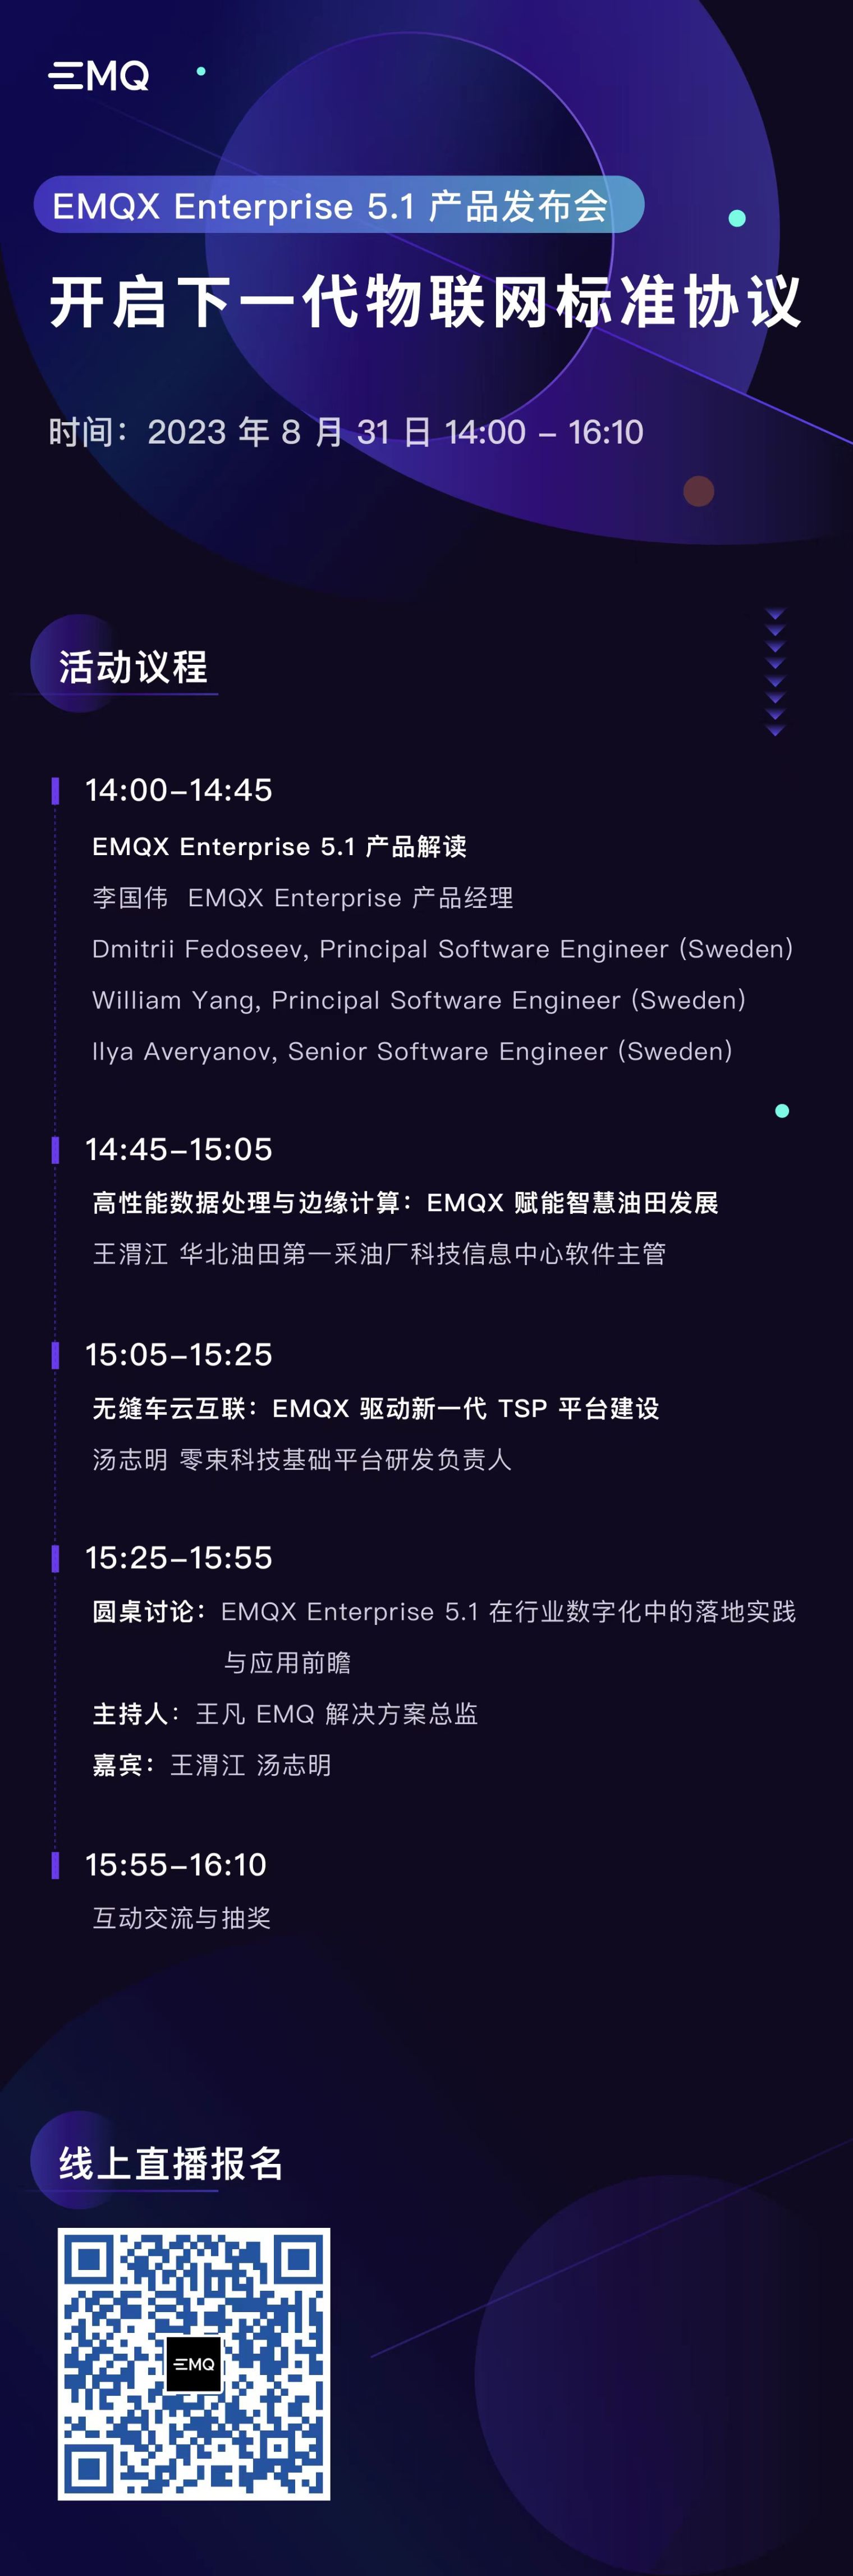 EMQX Enterprise 5.1 产品发布会议程